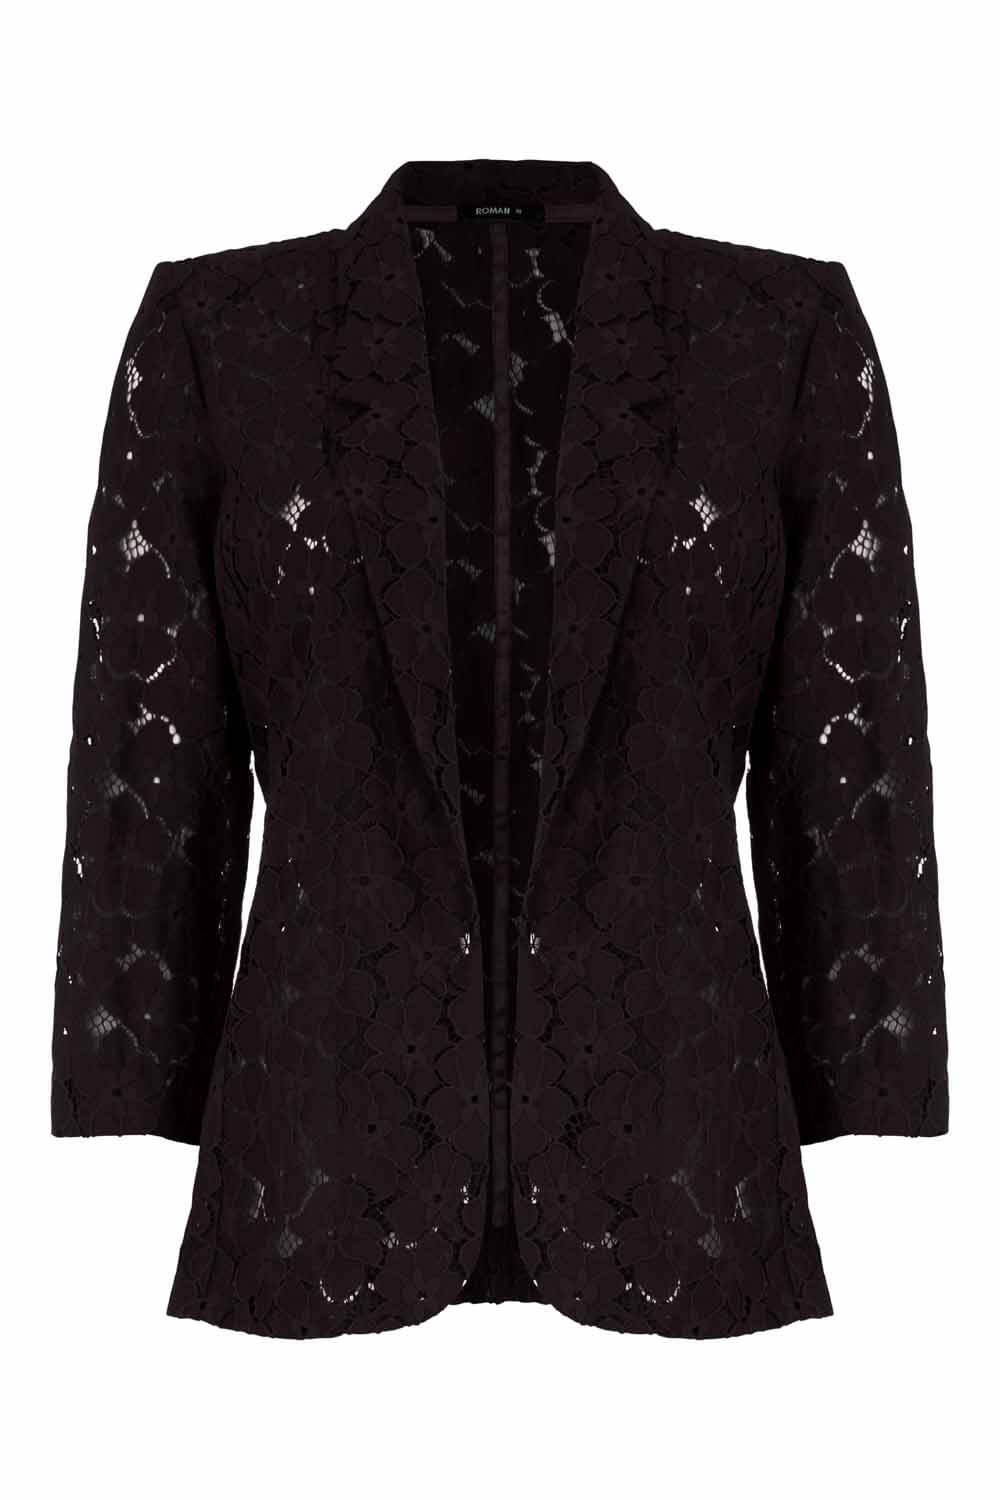 Black Floral Lace Jacket, Image 5 of 5